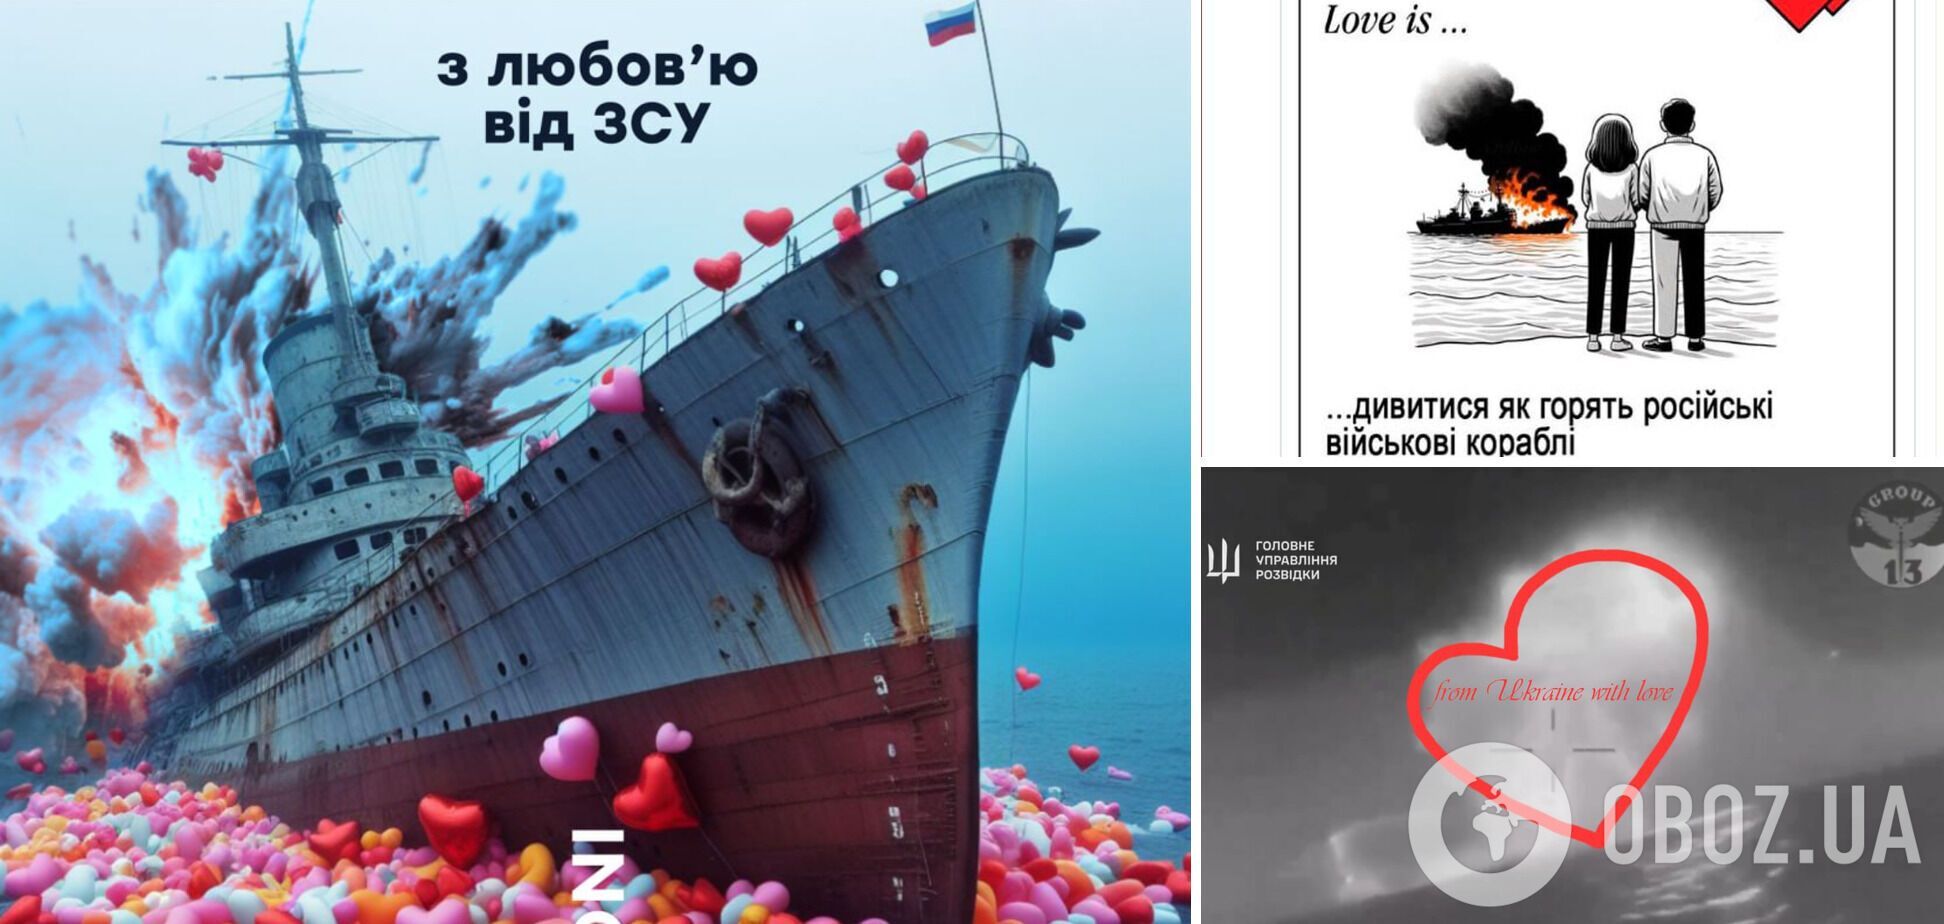 'З любов'ю від ЗСУ': мережа вибухнула жартами і мемами через знищення ВДК 'Цезар Куніков' у День Валентина
